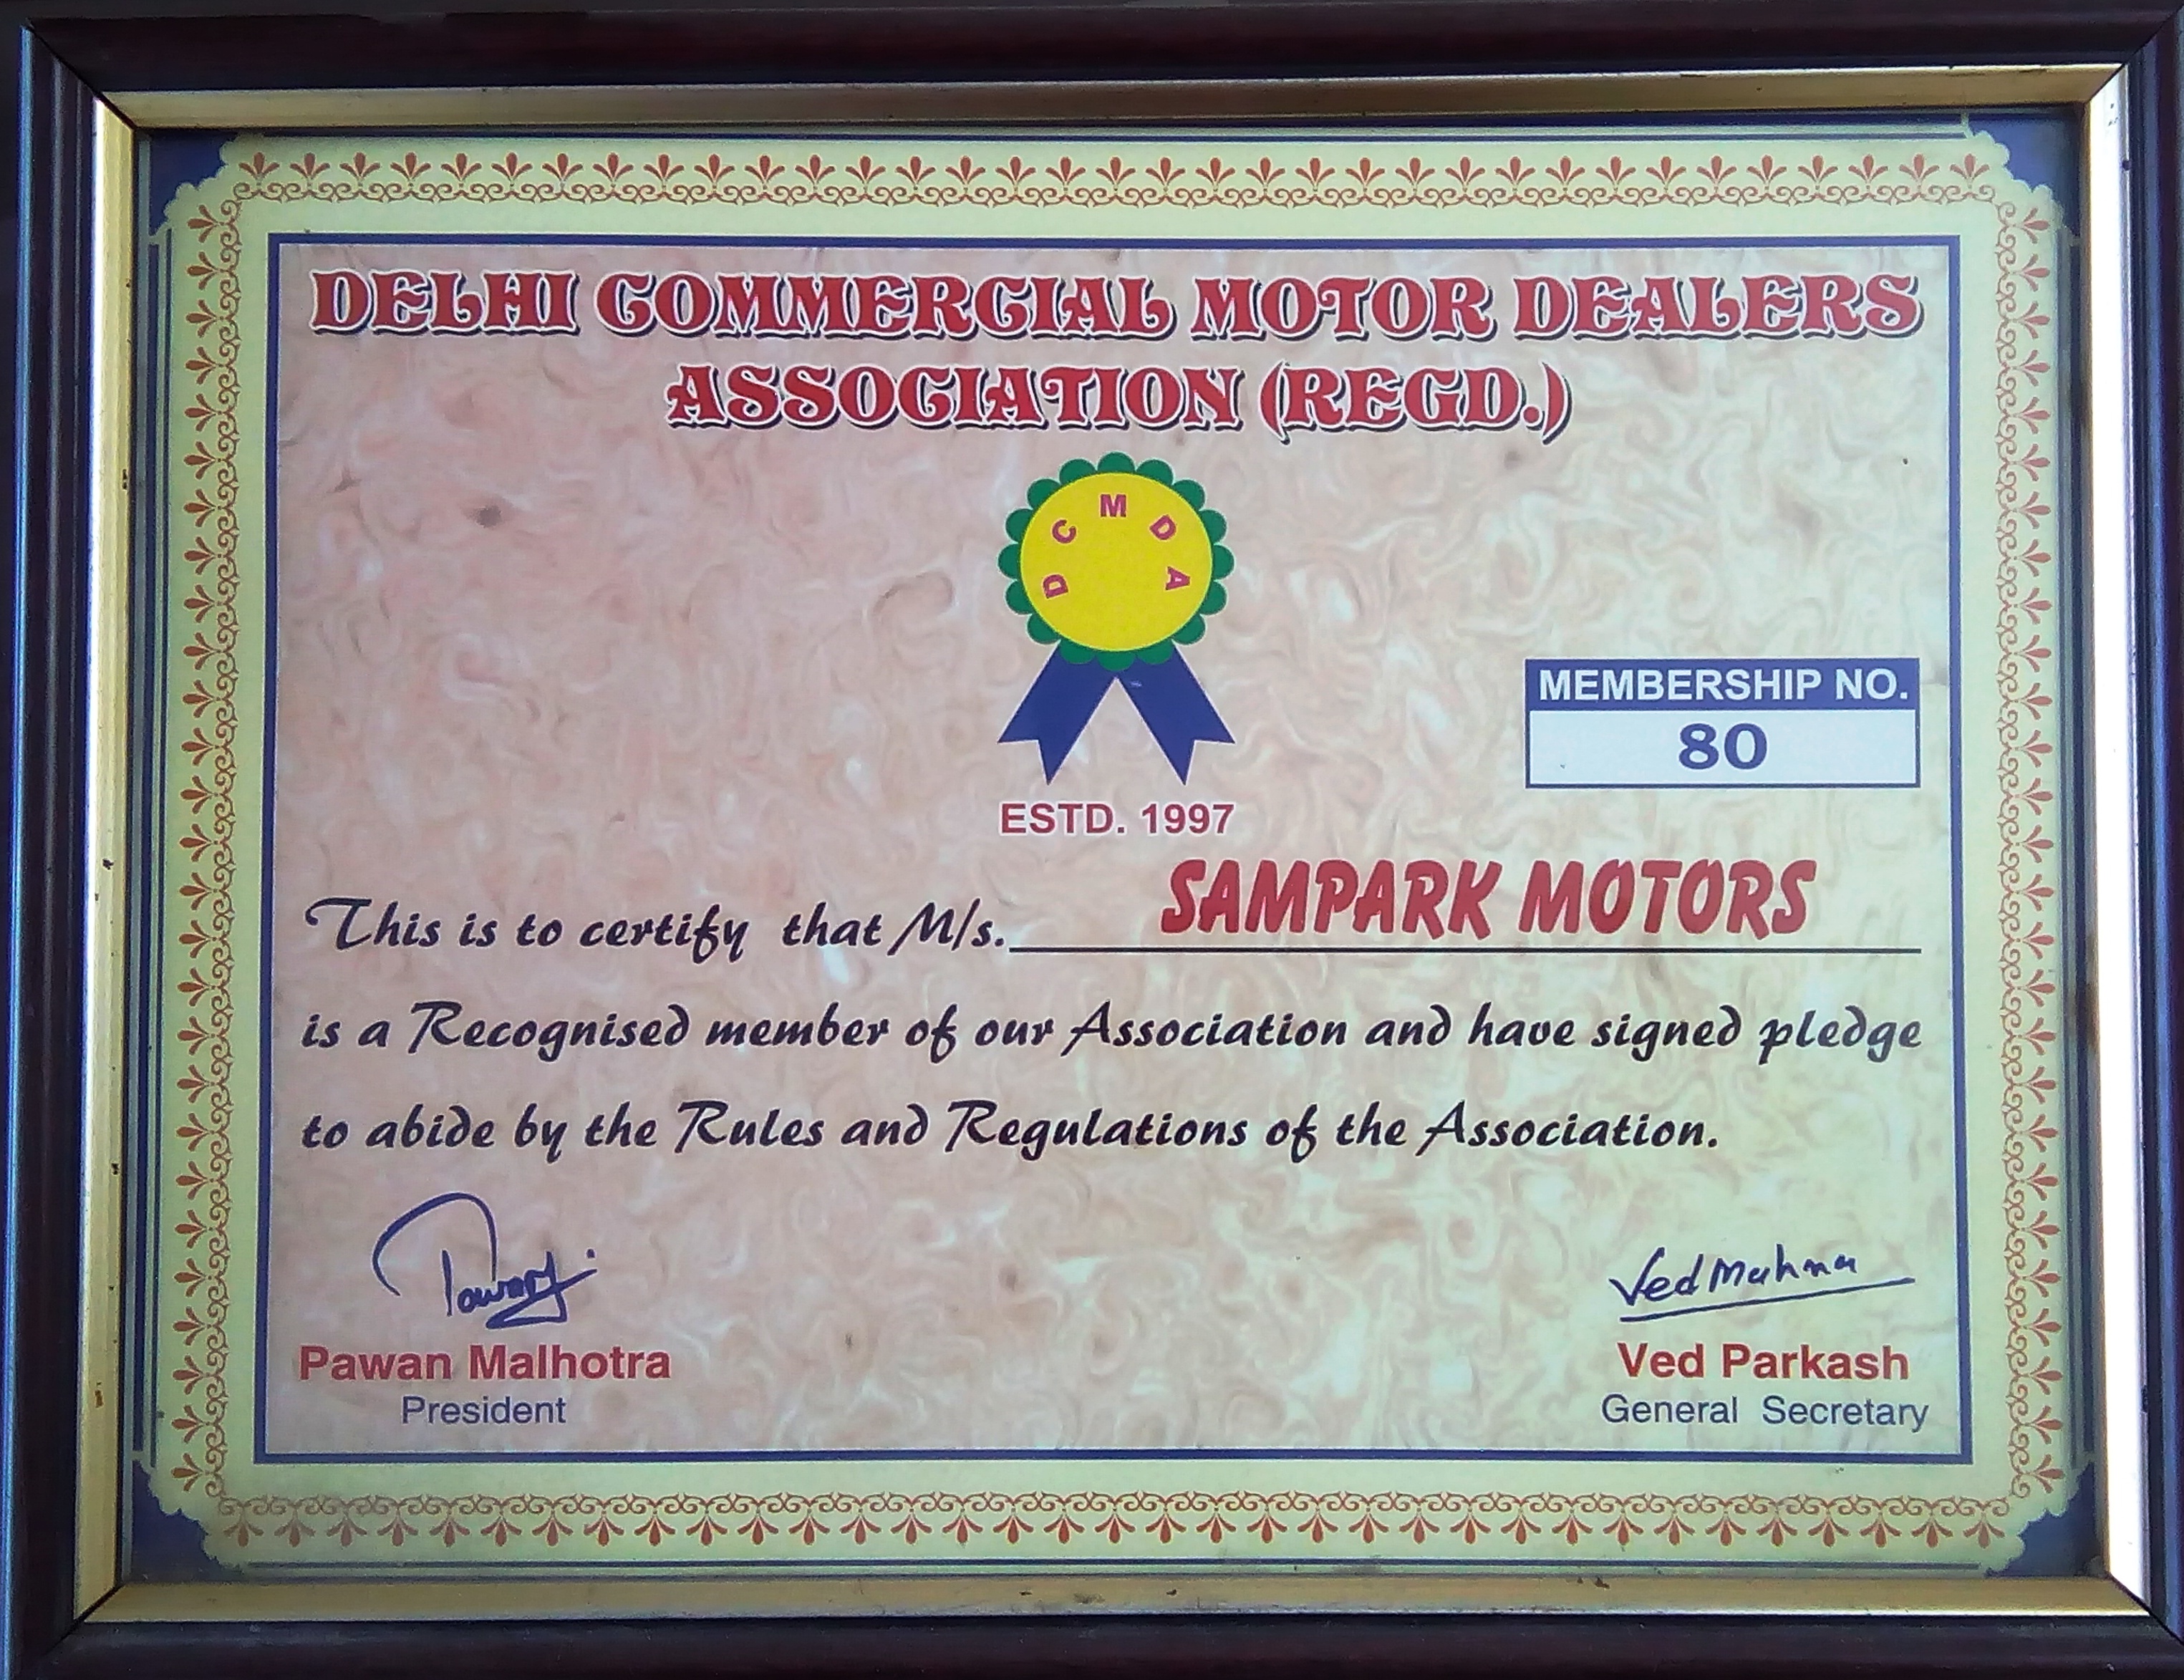 Sampark Motors in Delhi